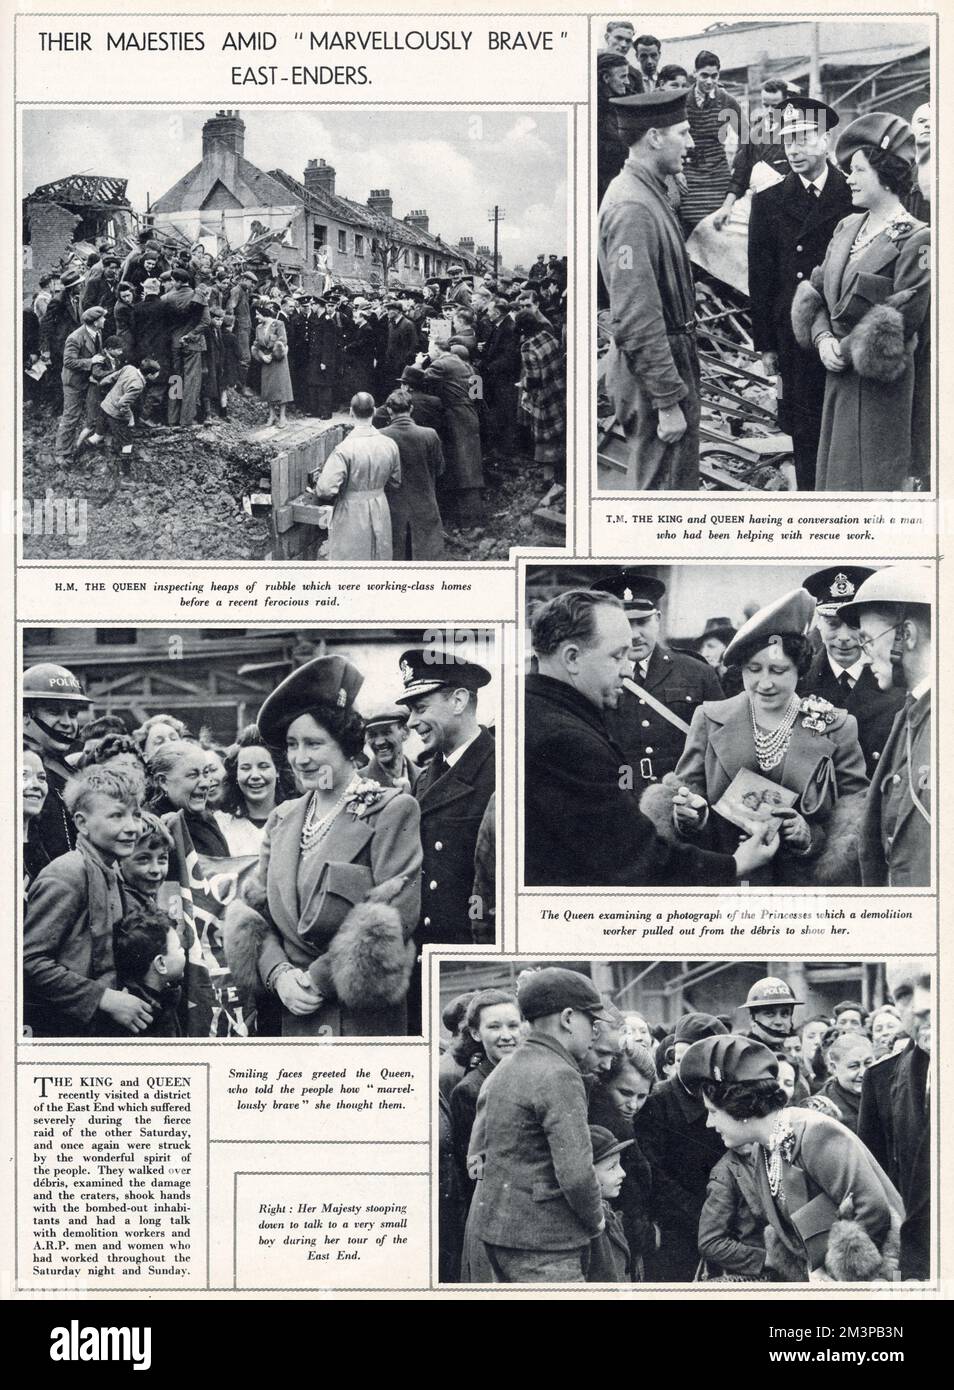 König George VI. Und Königin Elizabeth besuchten das East End von London, wo heftige Bombenanschläge verübt wurden. Sie gingen über Trümmer, untersuchten den Schaden und die Krater schüttelten den bombardierten Bewohnern die Hand und sprachen lange mit den Abbrucharbeitern. Stockfoto